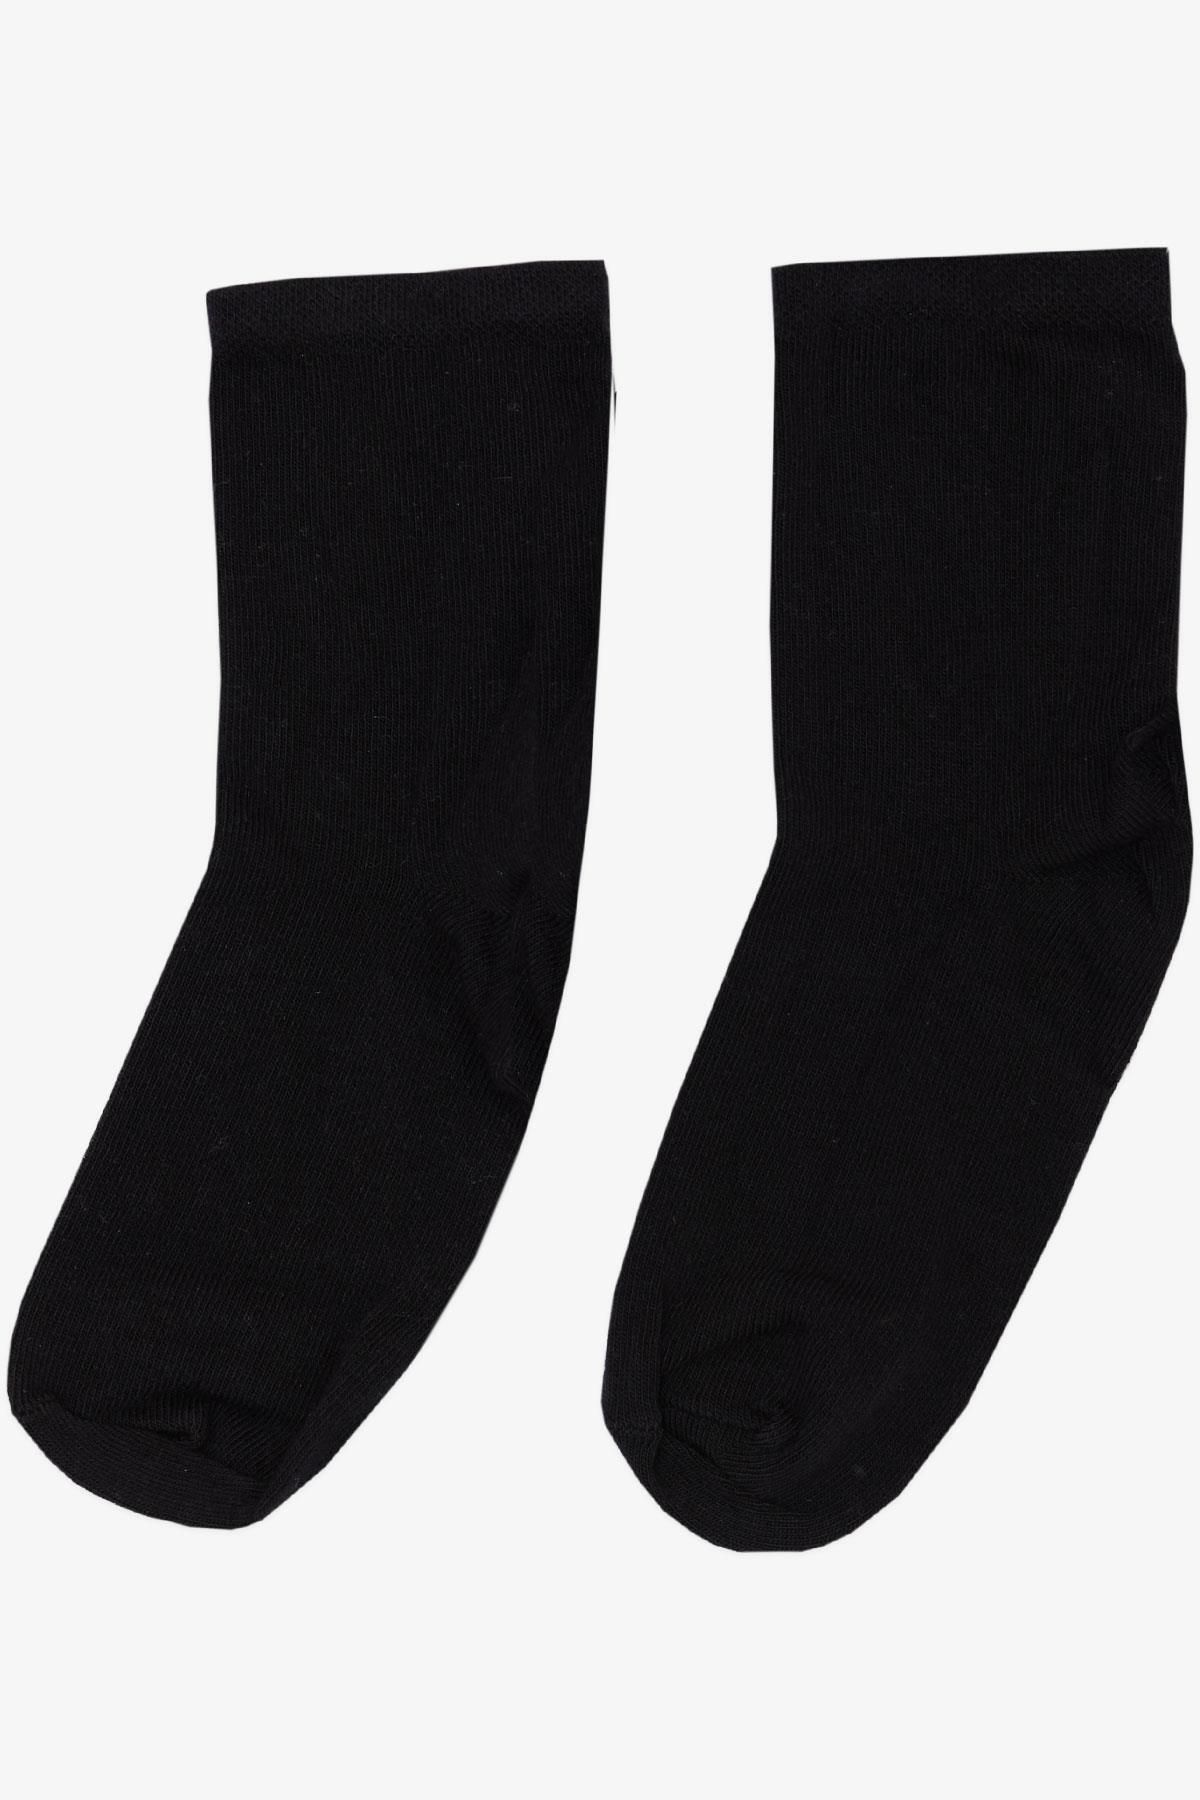 Katamino Artı Kız Çocuk Soket Çorap Basic Siyah